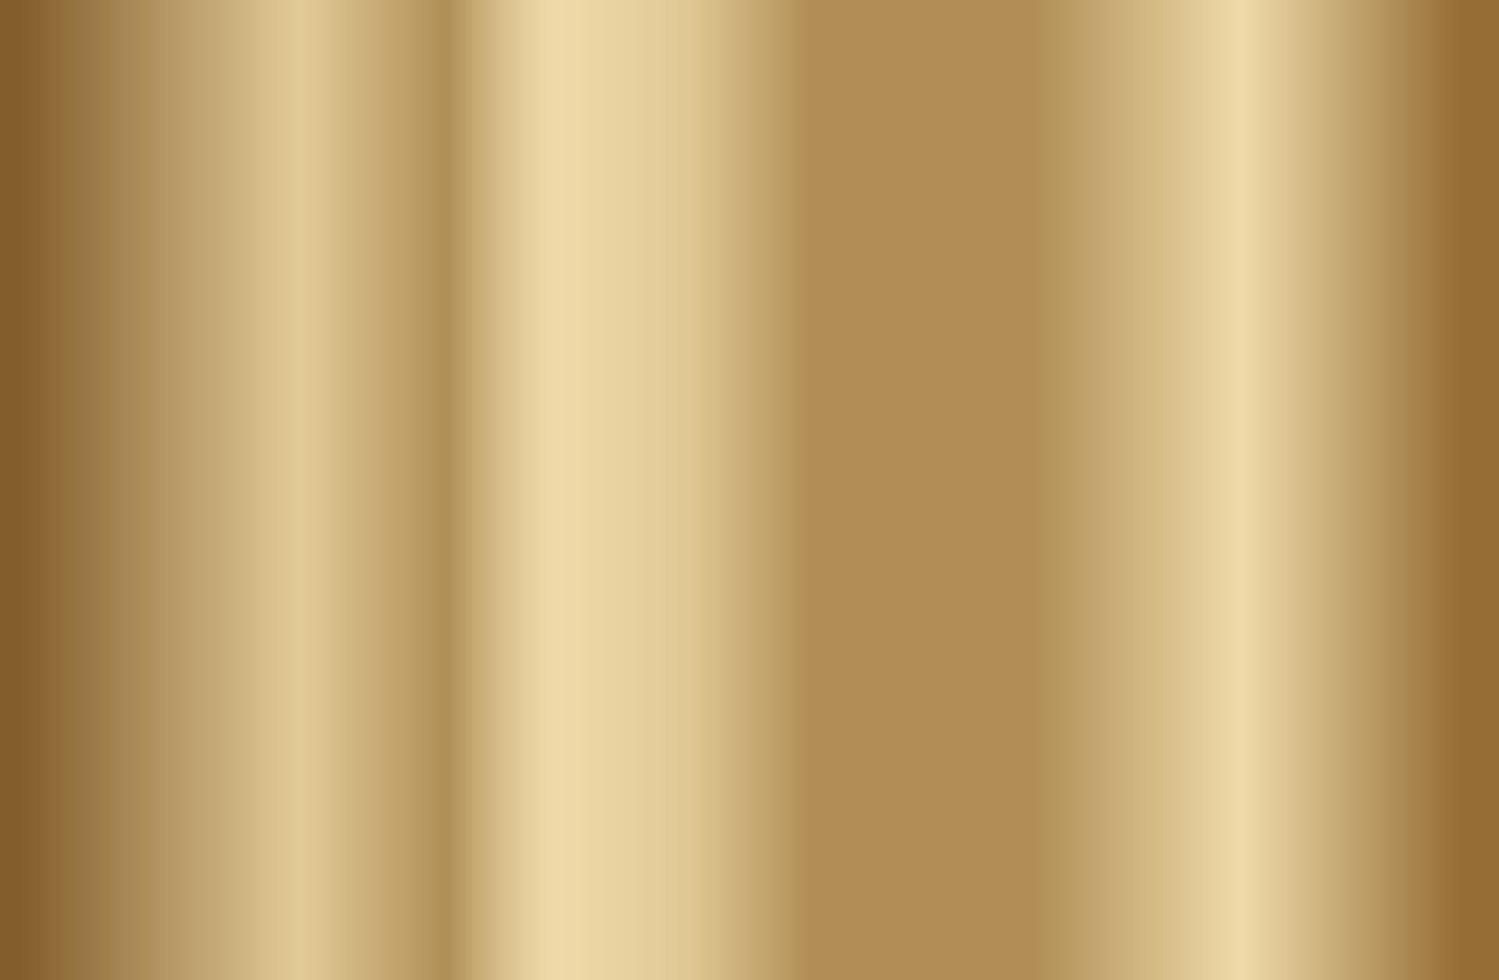 Vektor des Goldgradienten. Metallische Vektorillustration der Goldgradientenhintergrundbeschaffenheit für Luxusrahmen, -band, -fahne, -web, -münze und -etikett. elegante Licht- und Glanzvektorschablone